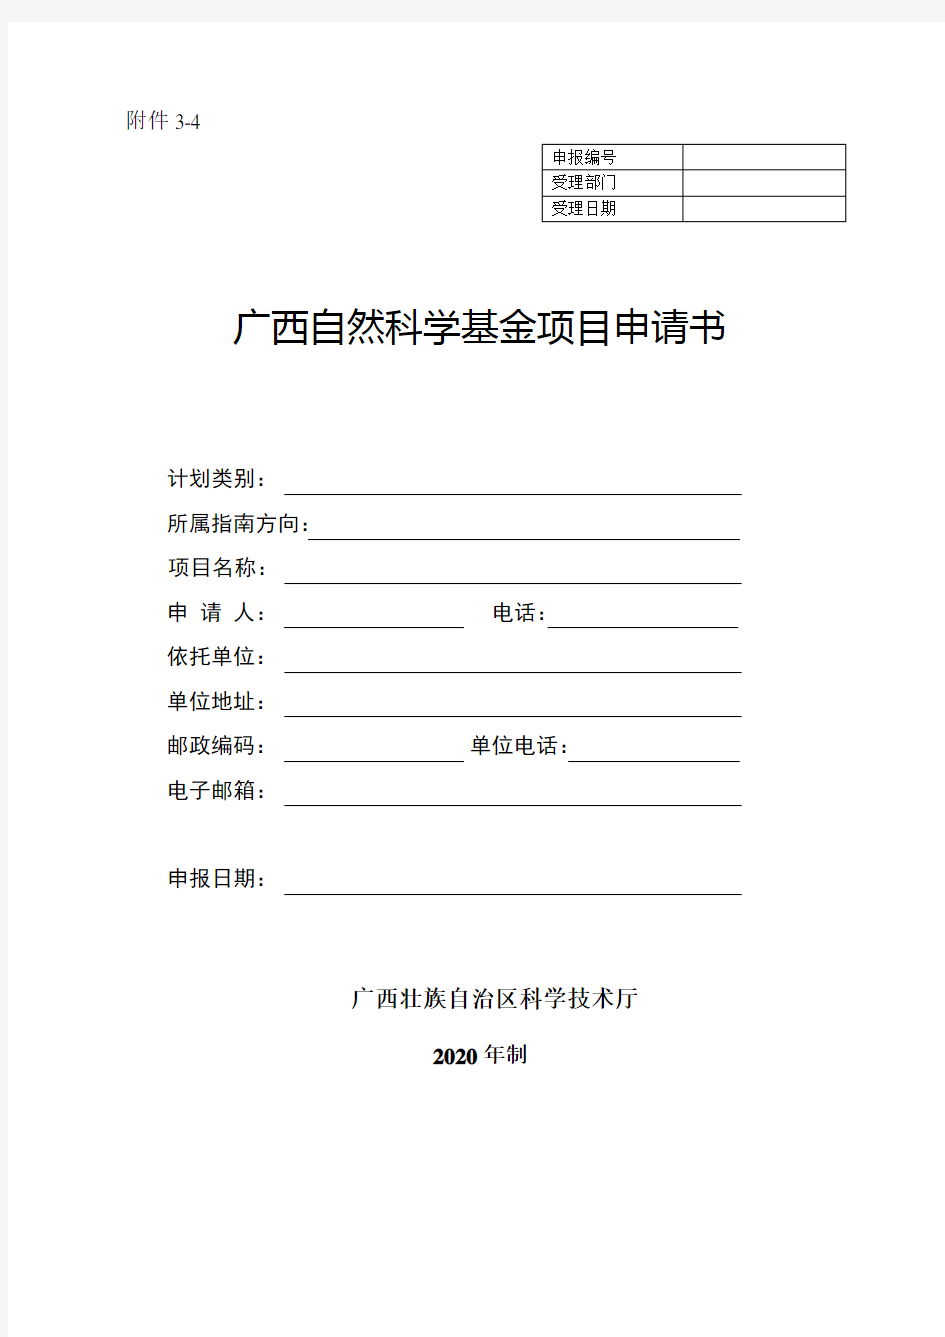 2020广西自然科学基金项目申请书